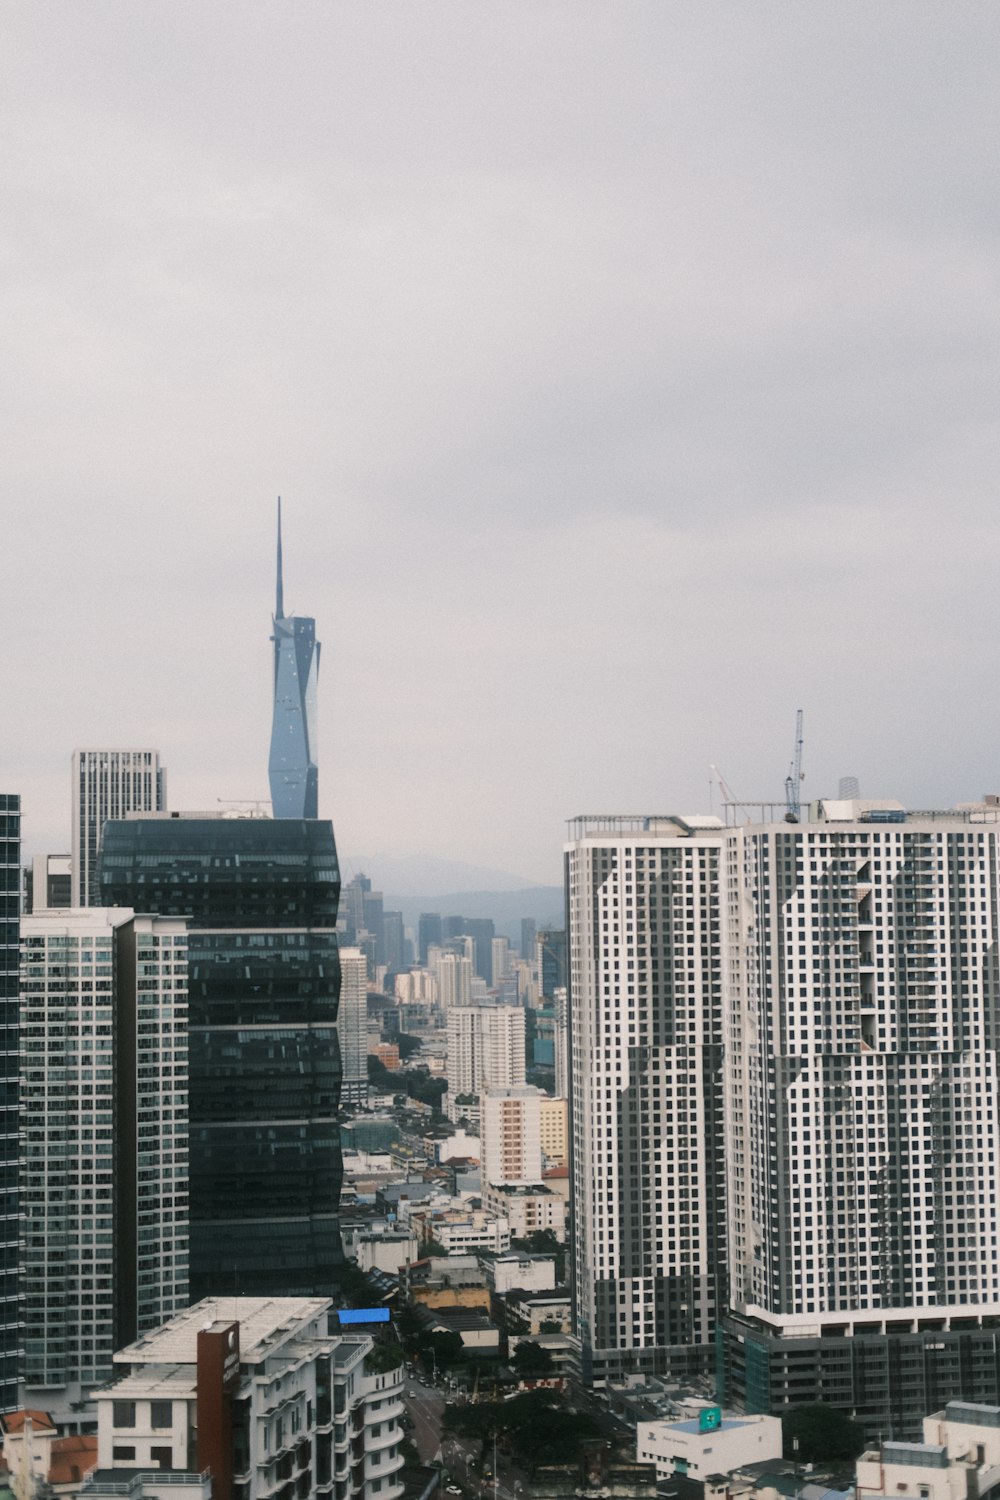 Una vista de una ciudad con edificios altos